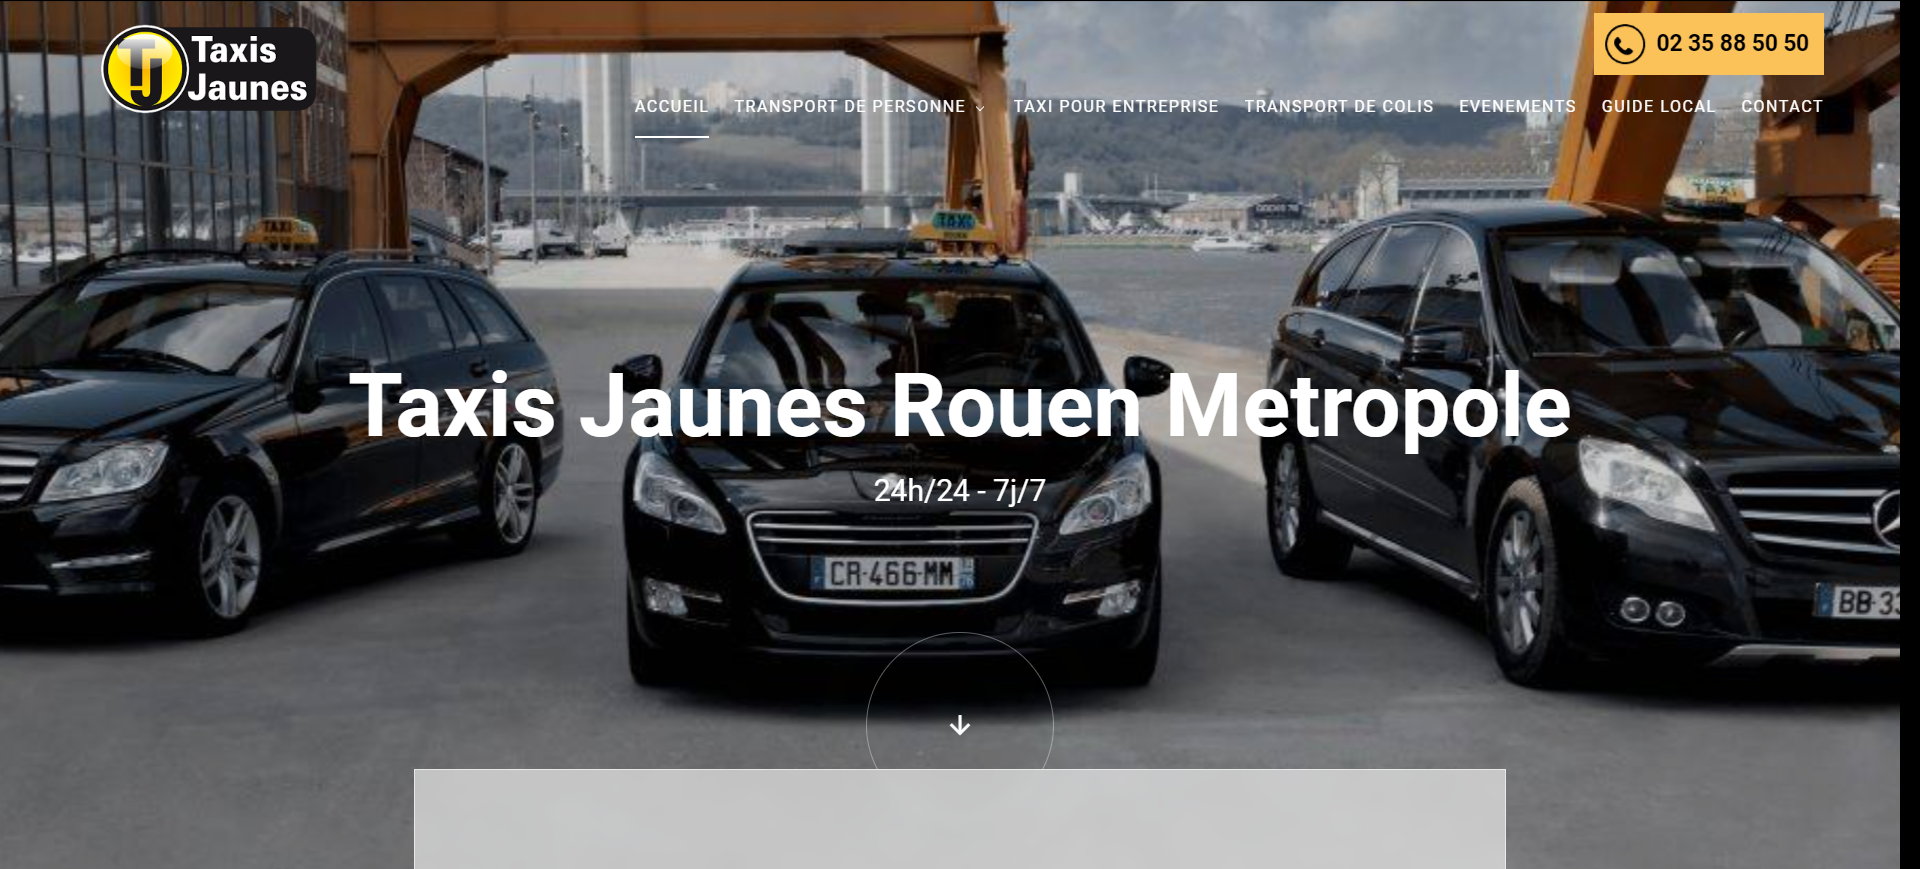 Création d’un site web pour Taxis Jaunes, compagnie de taxis à Rouen